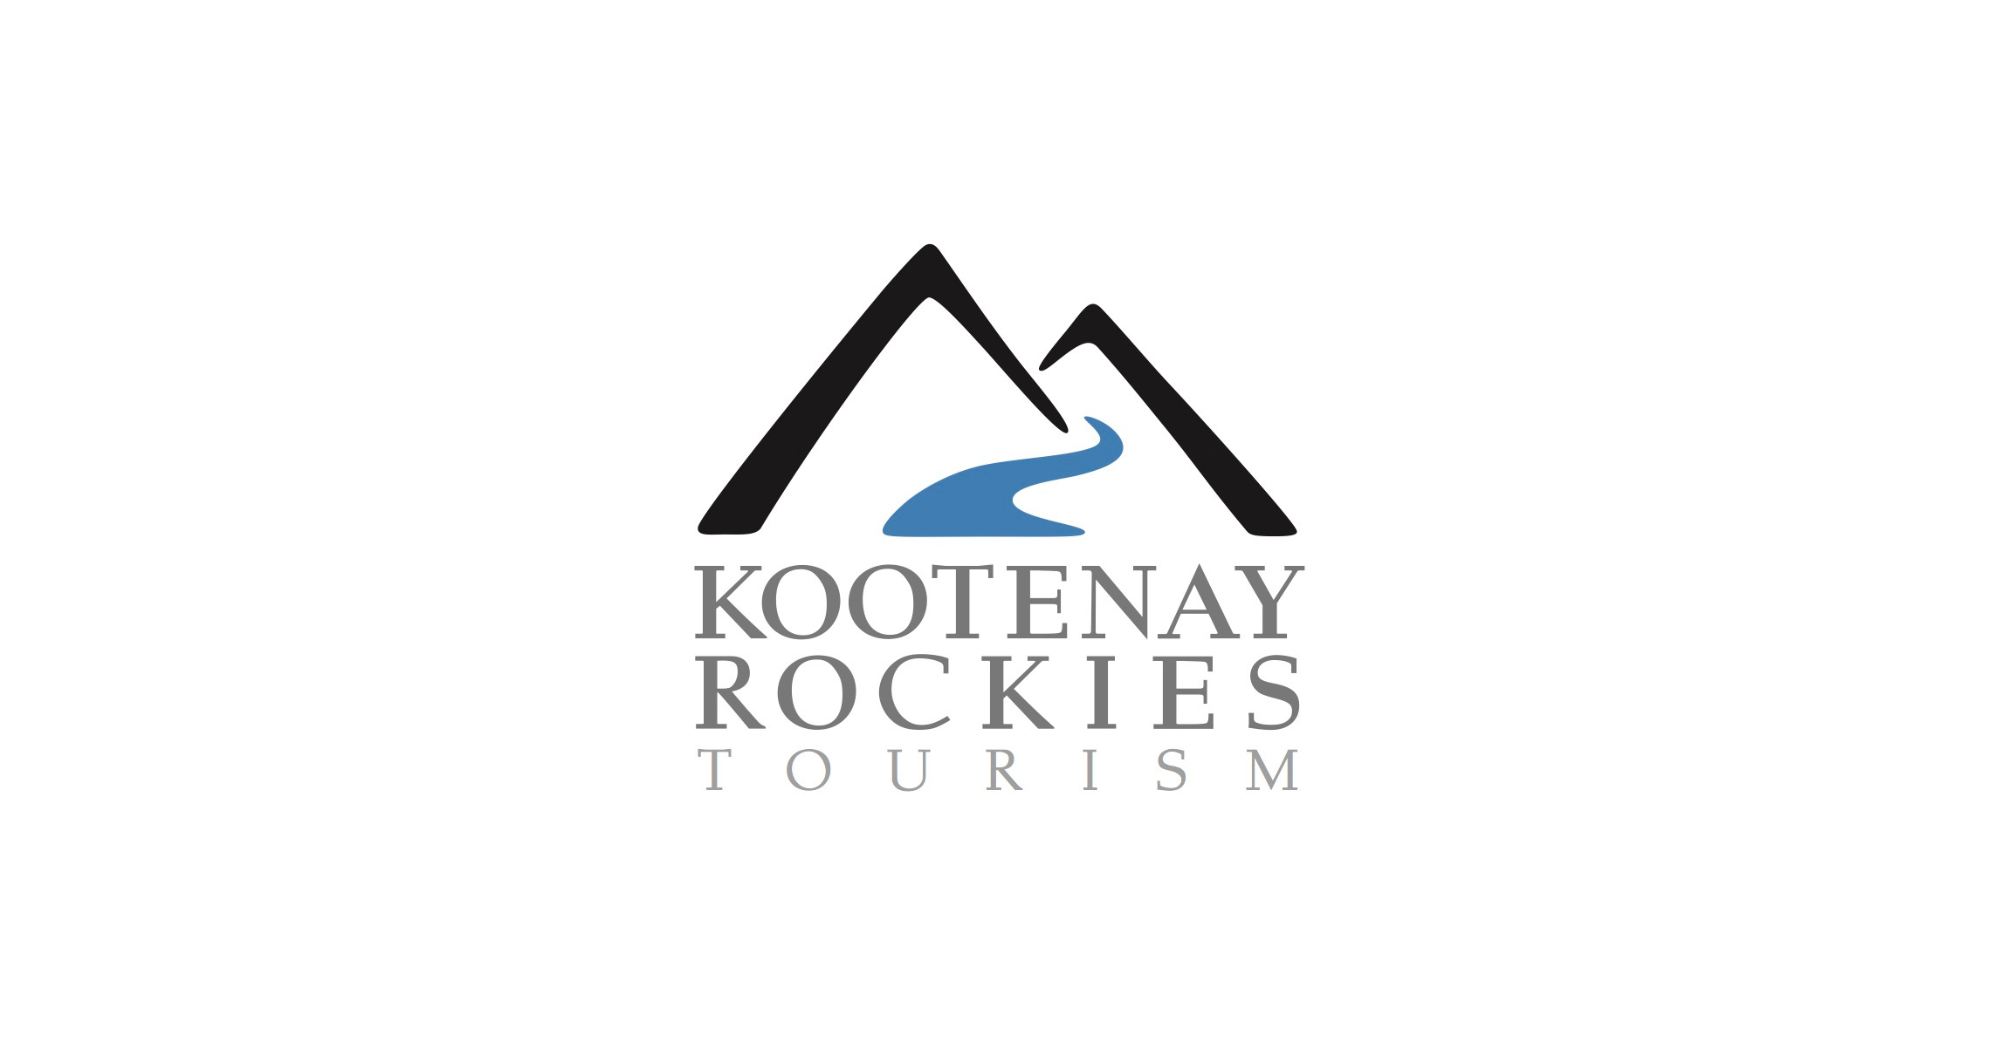 Kootenay Rockies Tourism Association (KRTA)